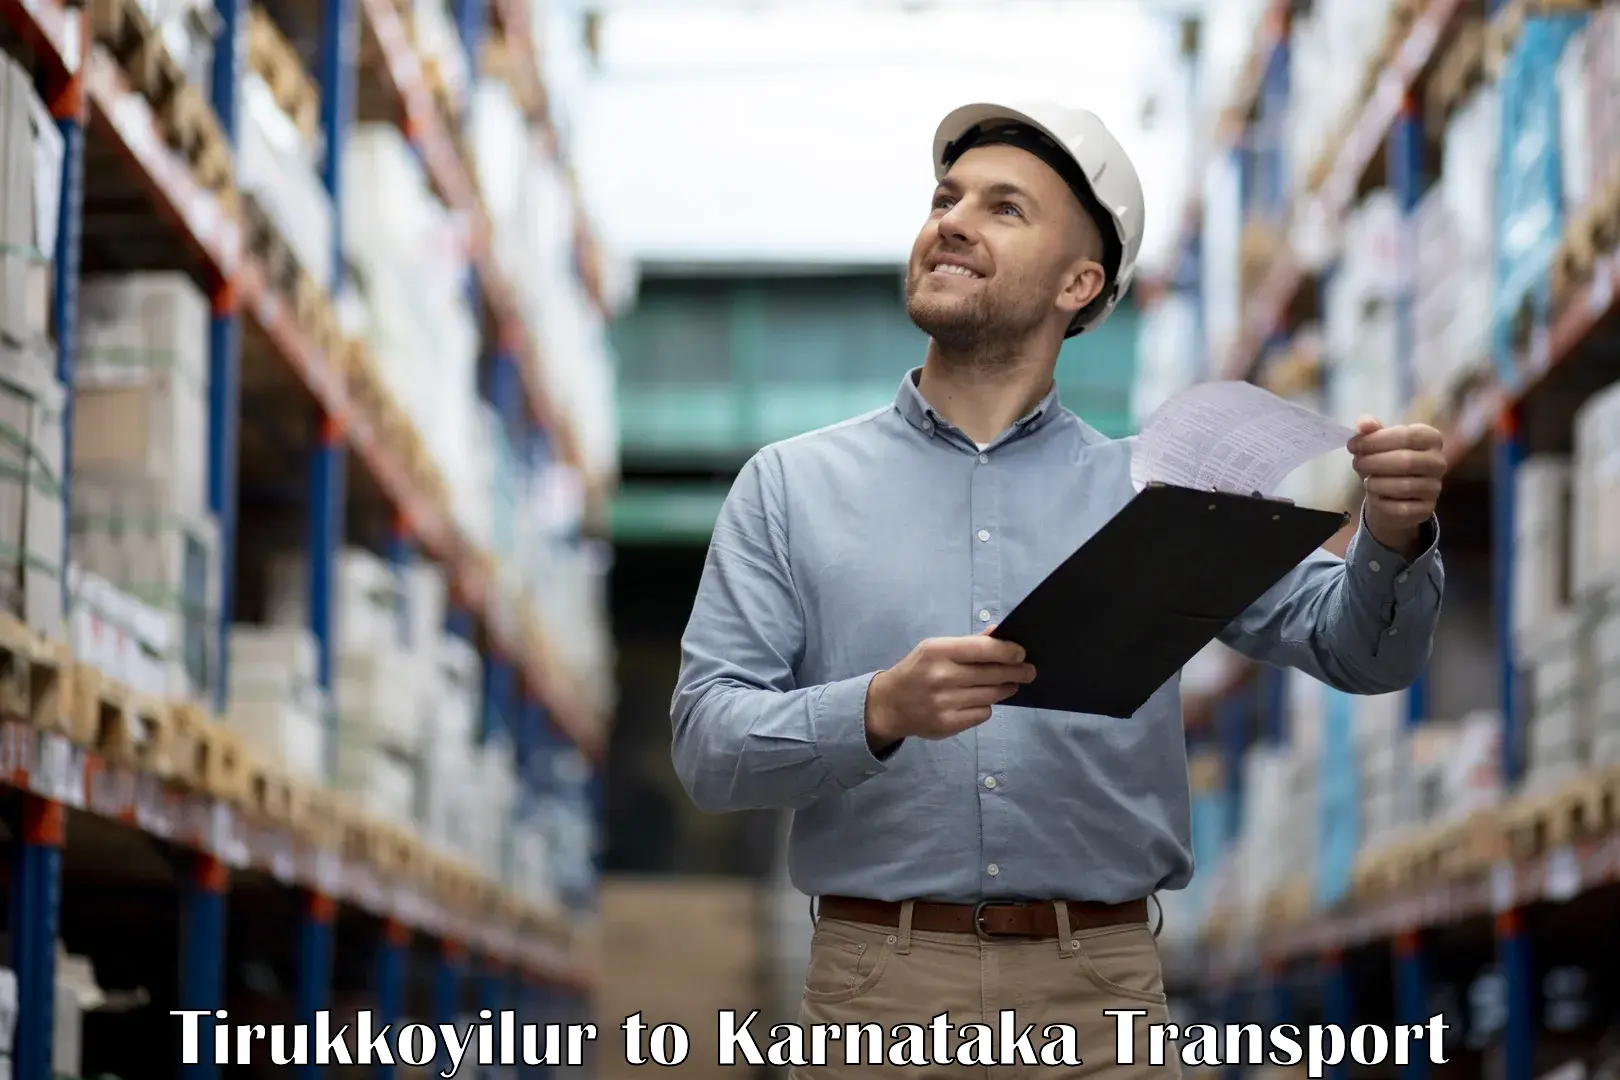 Inland transportation services Tirukkoyilur to Karnataka